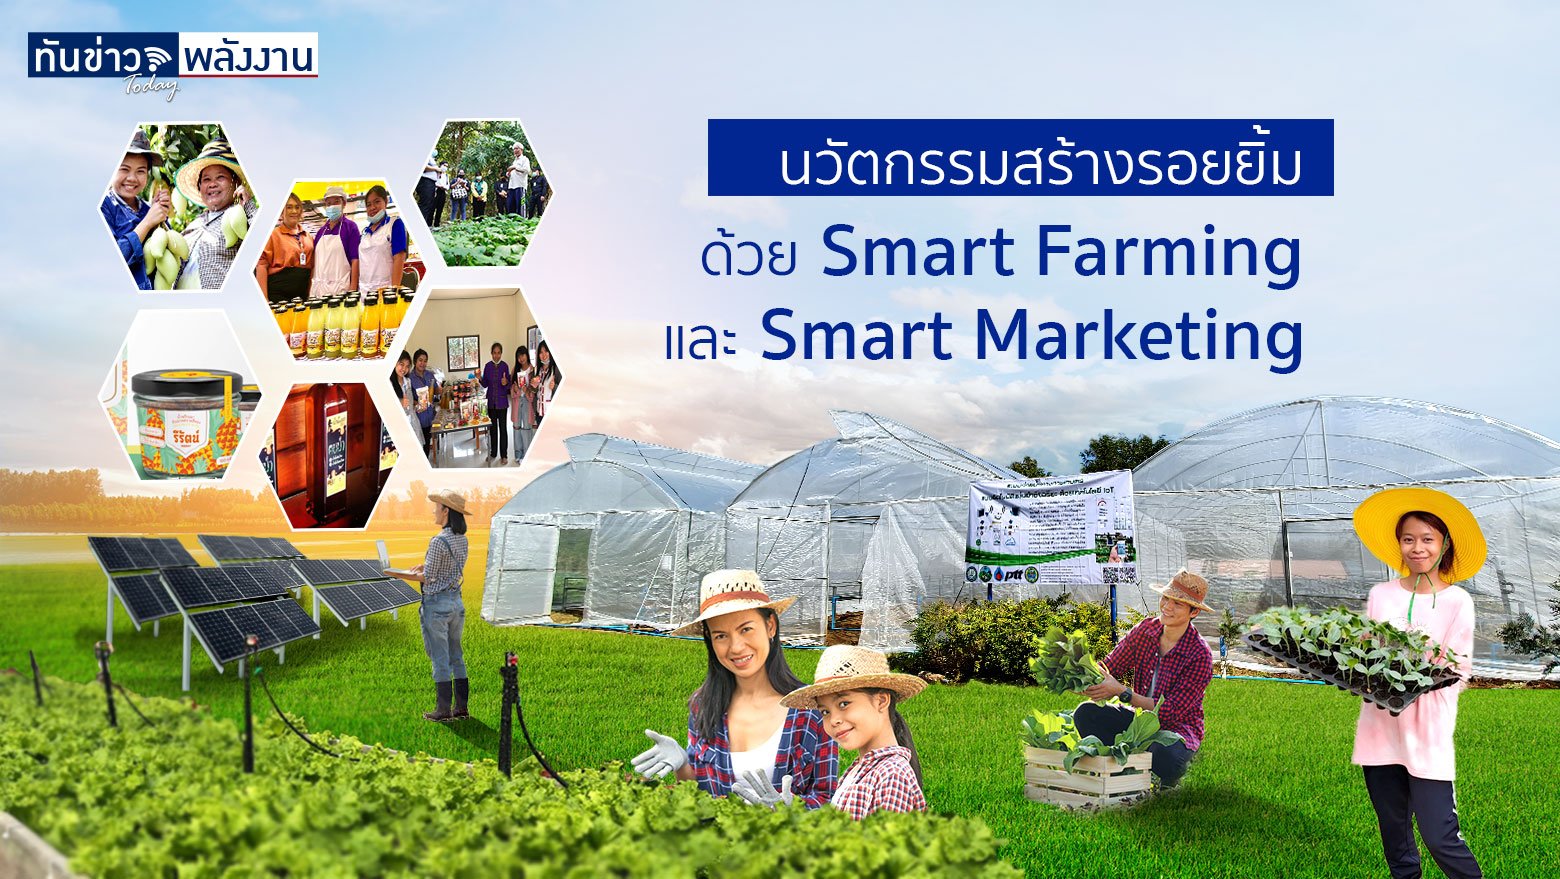 นวัตกรรมสร้างรอยยิ้ม ด้วย “Smart Farming” และ “Smart Marketing”